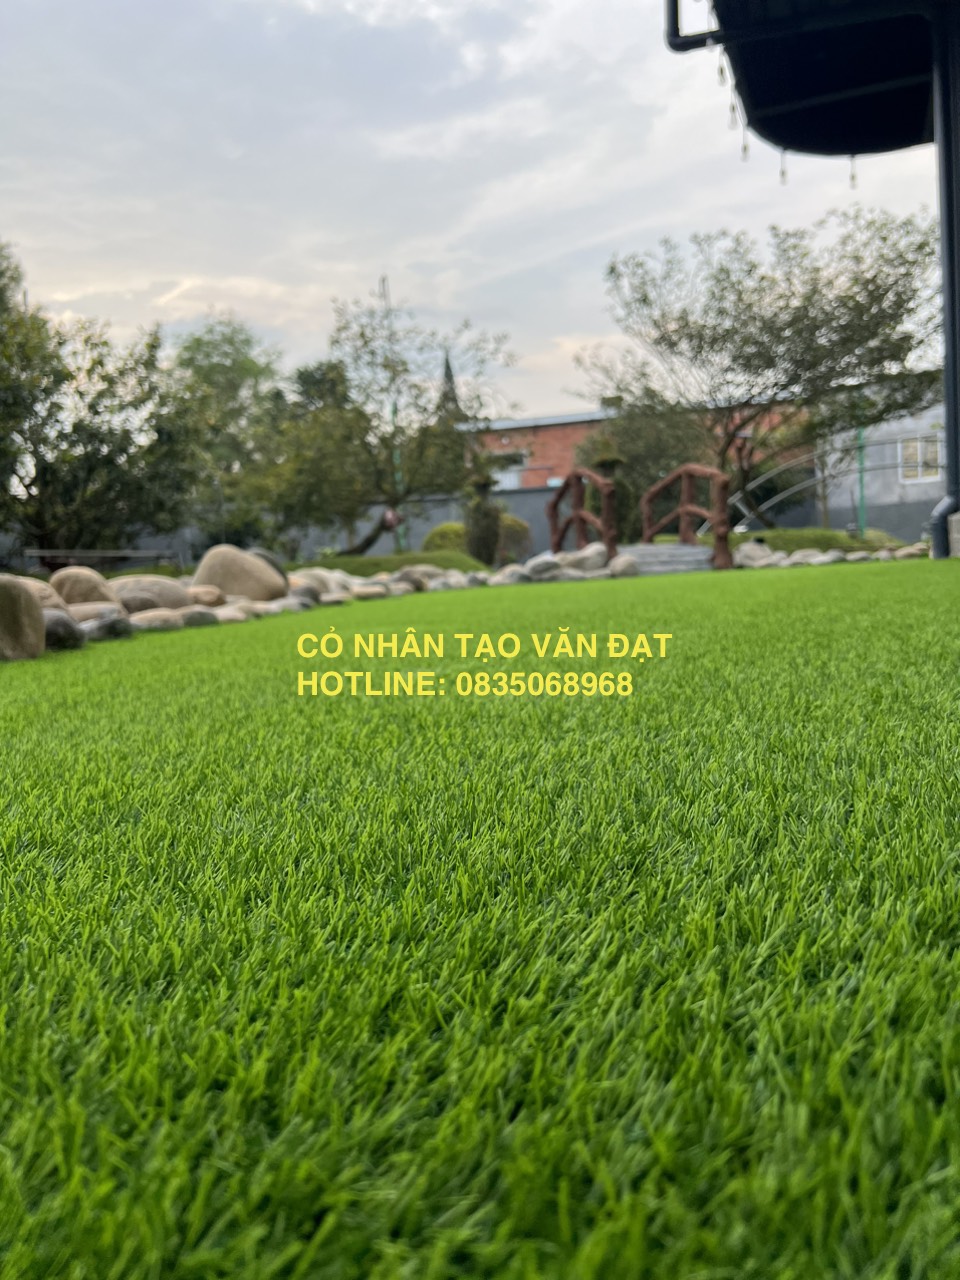 Cận cảnh chất lượng thảm cỏ 